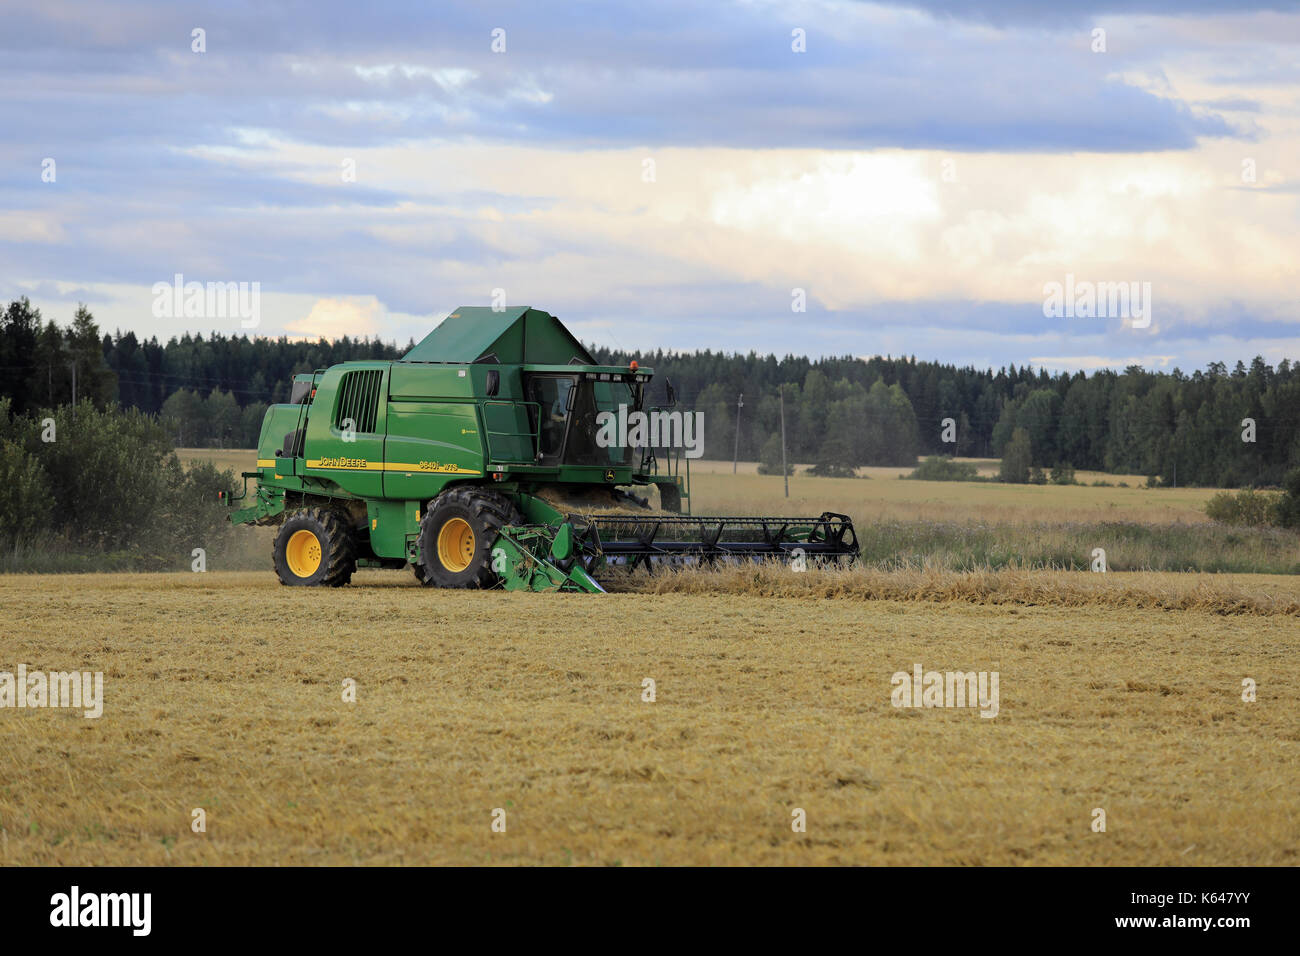 SALO, Finnland - 25. AUGUST 2017: Bauern ernten Getreide mit John Deere Mähdrescher 9460 habe ich an einem Herbstabend im ländlichen Süden Finnlands. Stockfoto